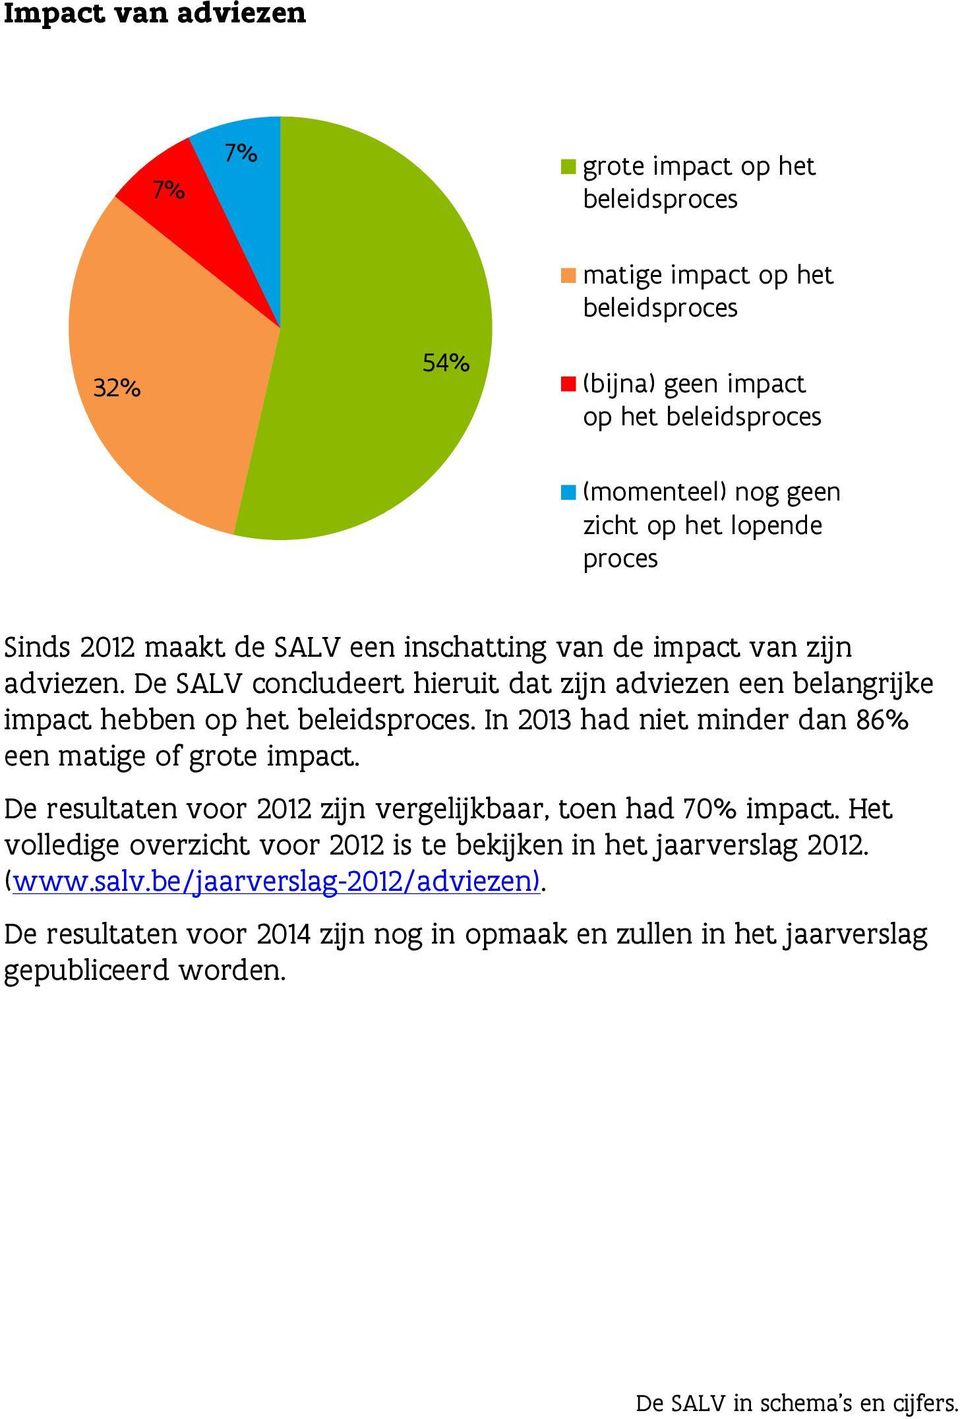 De SALV concludeert hieruit dat zijn adviezen een belangrijke impact hebben op het beleidsproces. In 2013 had niet minder dan 86% een matige of grote impact.